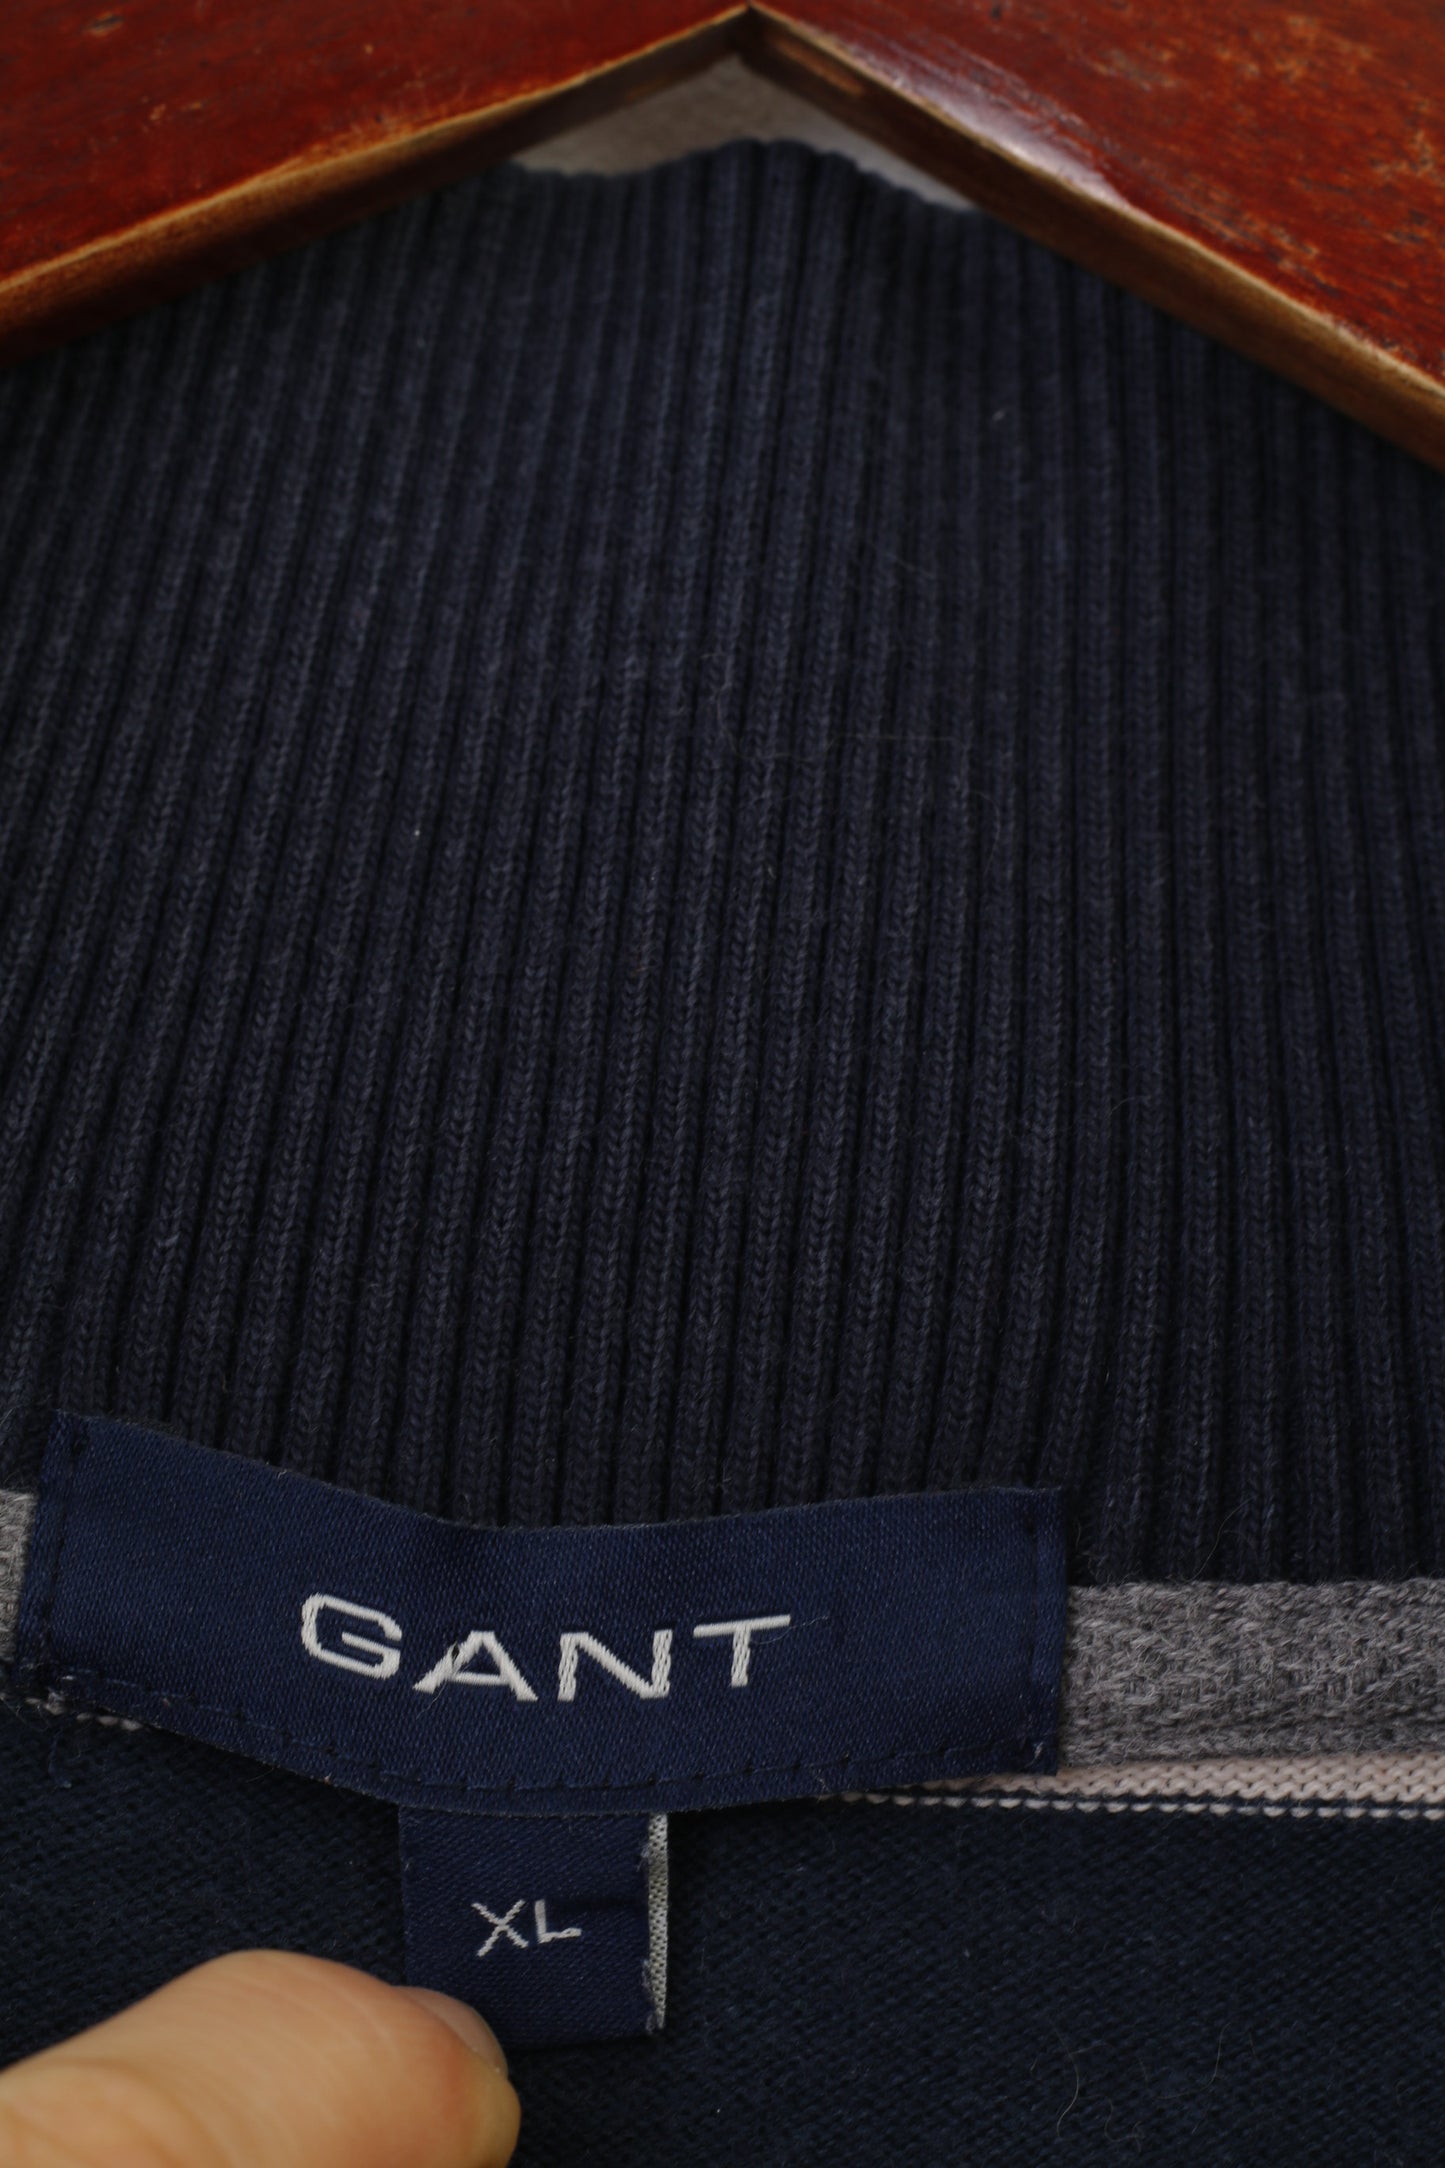 Gant Men XL (L) Jumper Navy Striped Cotton Vintage Bottoms Collar Marine Top